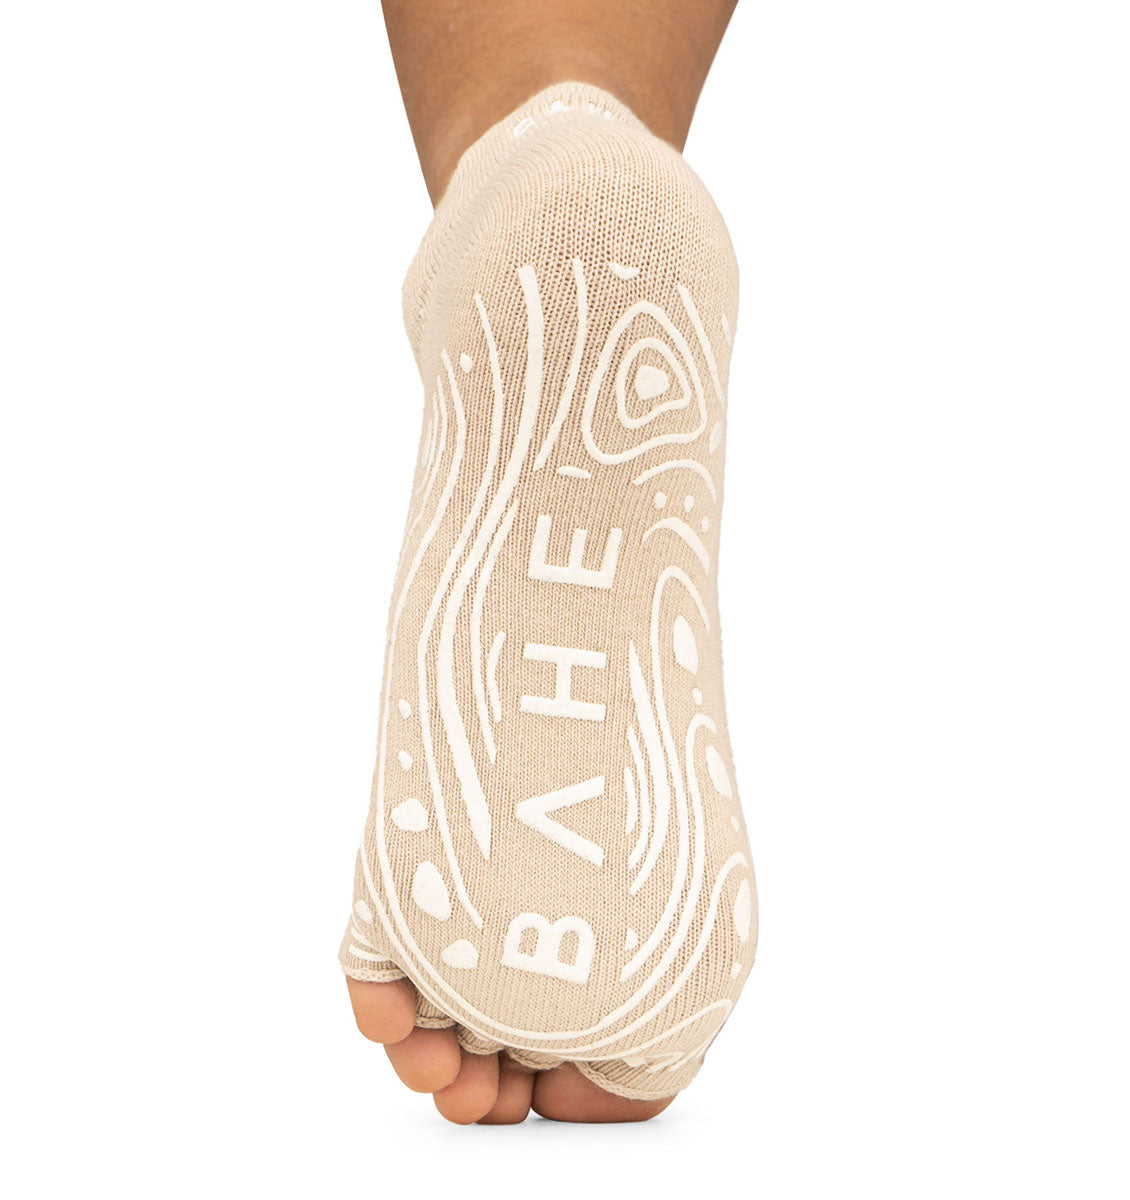 BAHE Grounded Grippy Open-Toe Socks - Dusty Beige - 2